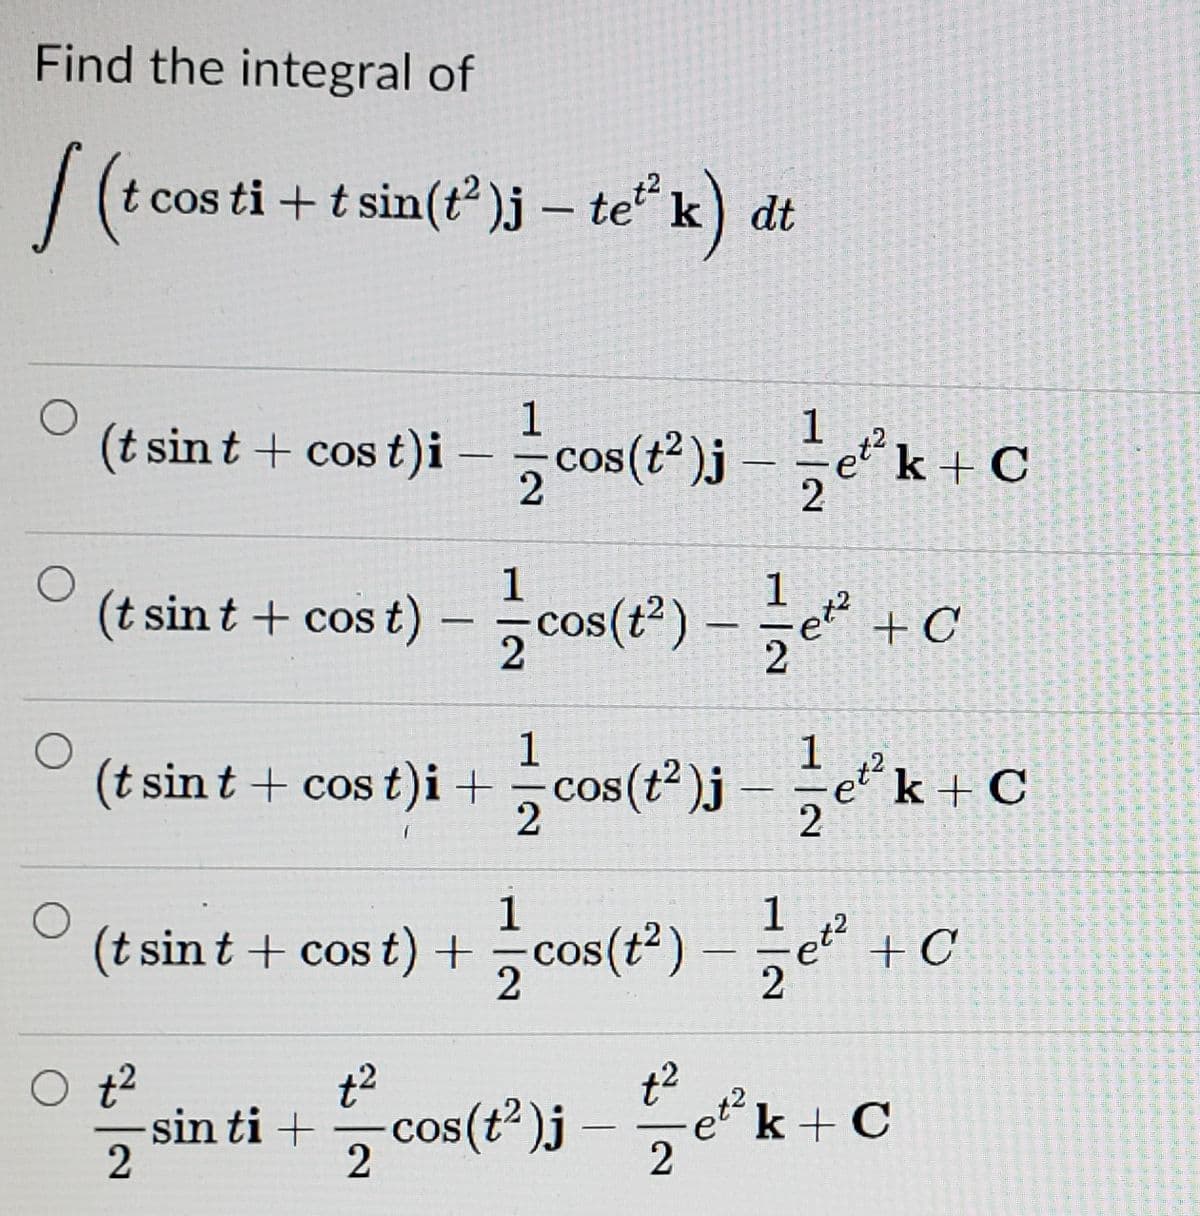 Find the integral of
cos ti + t sin(t )j – te“ k) dt
(t sint + cos t)i - cos(")j k+c
cos (t
et k + C
1
(t sin t + cos t) – cos(*) –e +C
1
|
2
2
(t sin t + cos t)i +cou(")-C
1
(t sint + cost)i +
k + C
2
COS
|
1
(t sint + cos t) + cos(t*) -+
et +C
2
t2
sin ti +cos(t")j -k+ C
et k + C
2
2
COS
2
